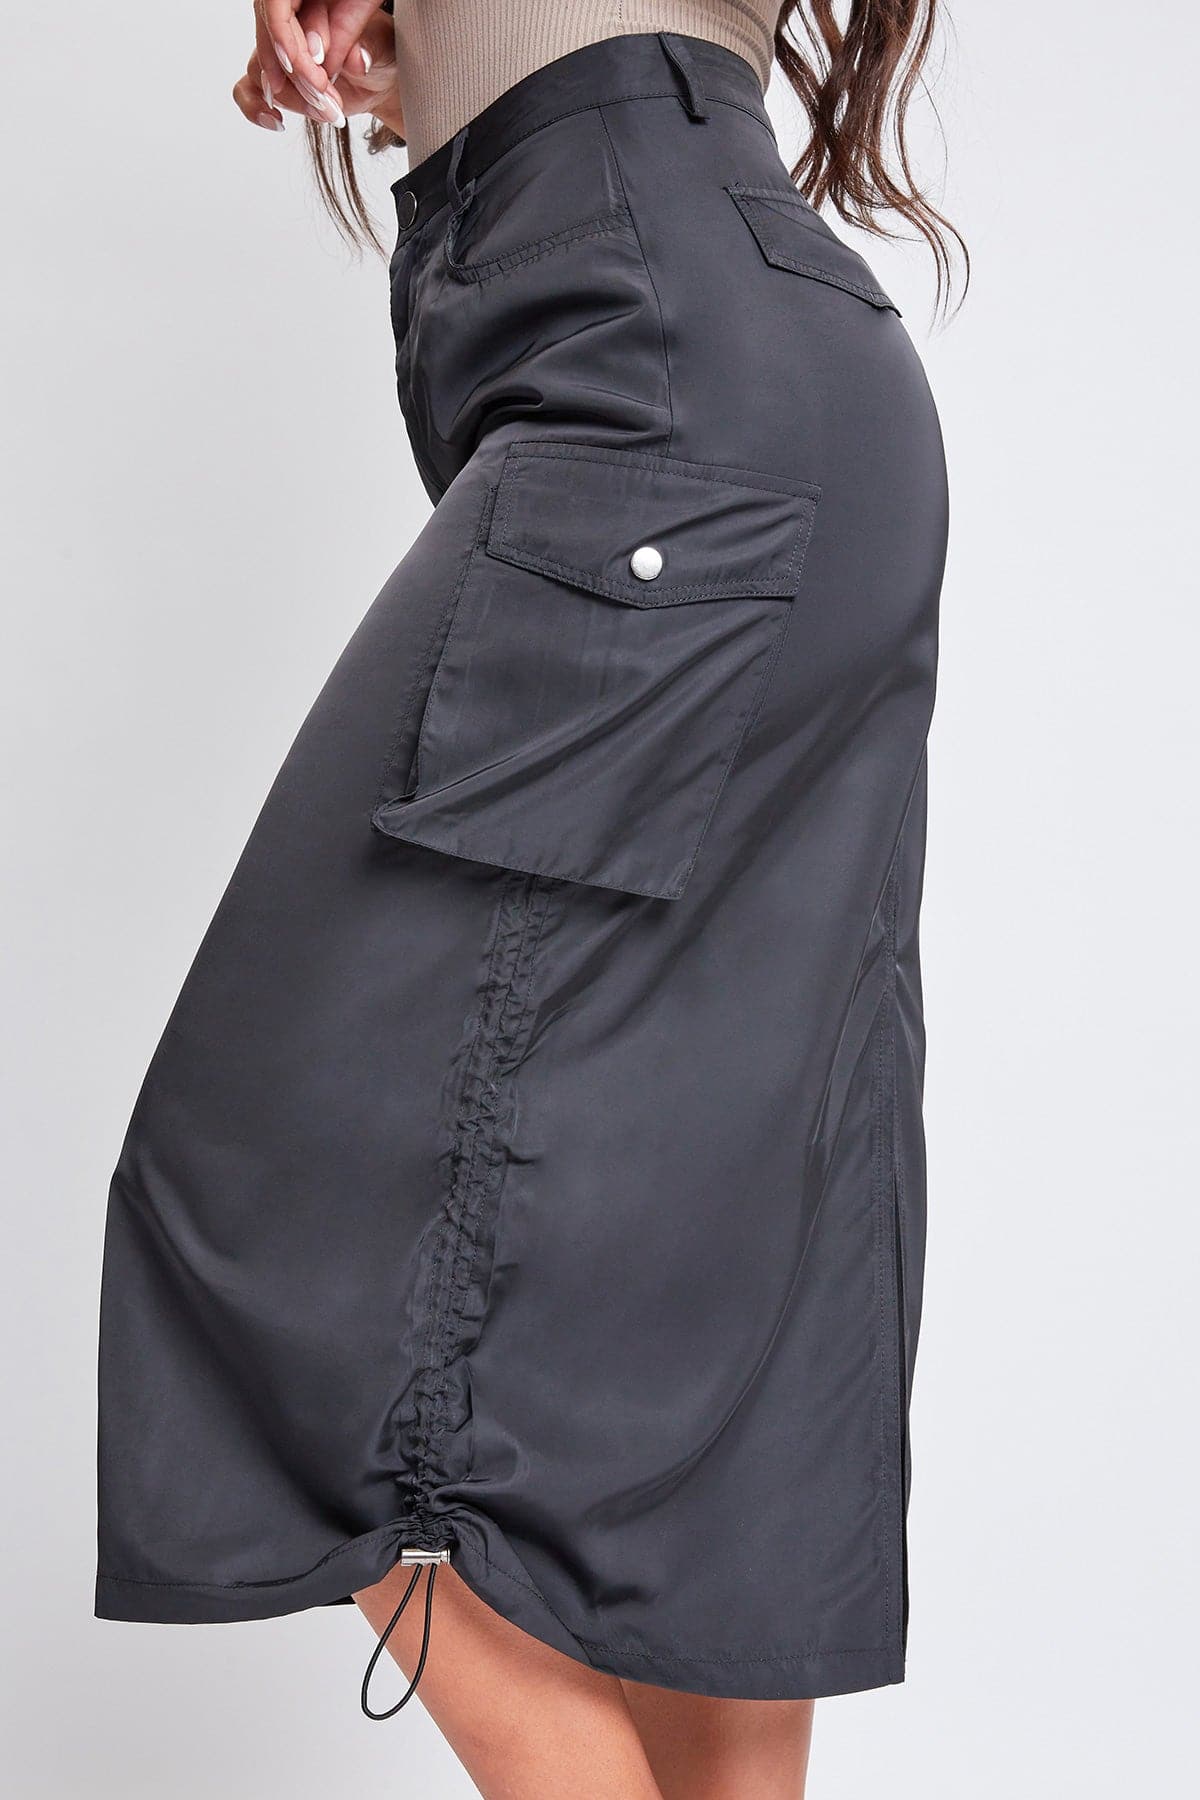 Women's Maxi Cargo Skirt